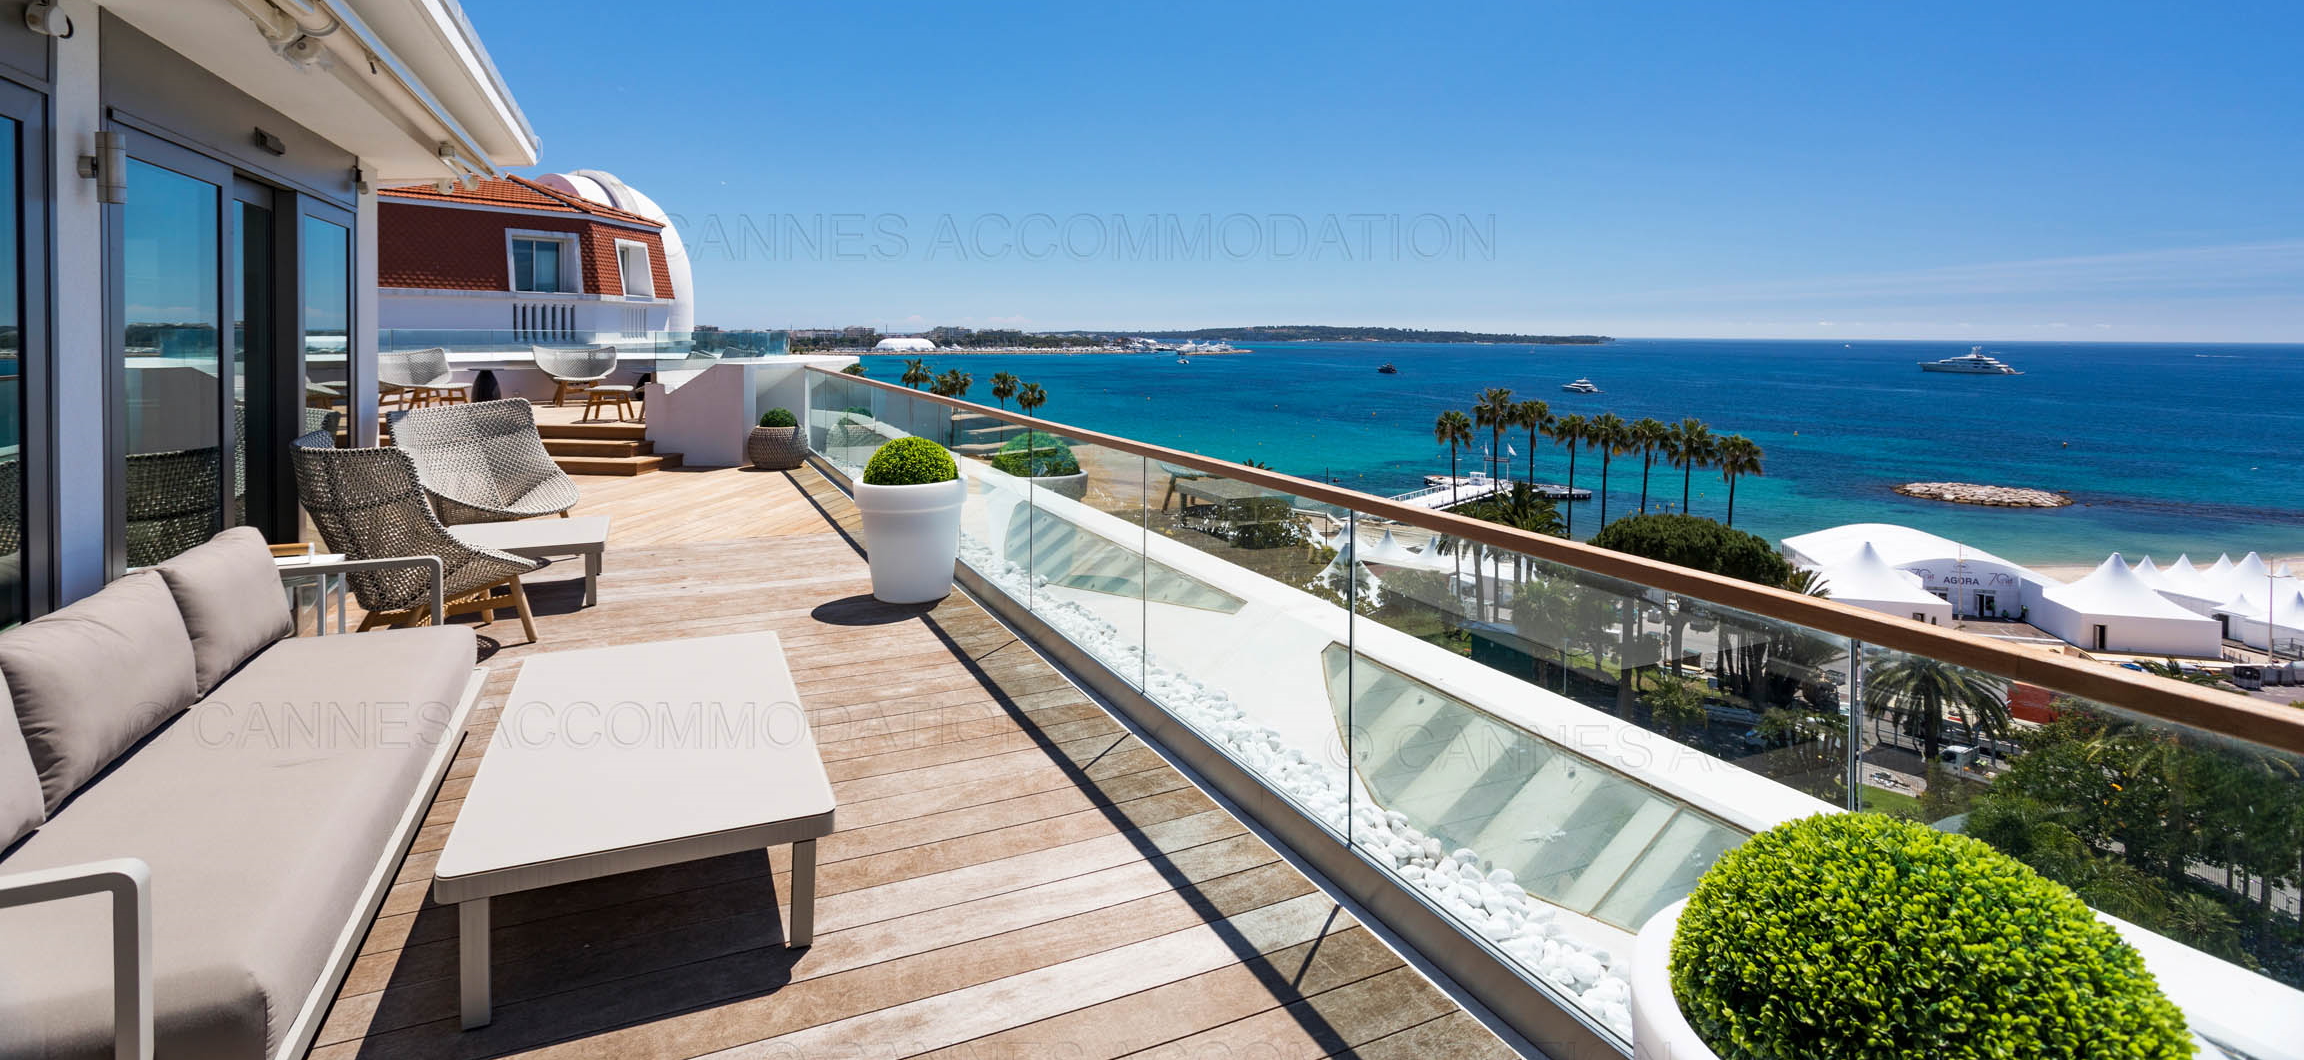 Cannes Accommodations Les 7 avantages pour vous de la location d'appartement